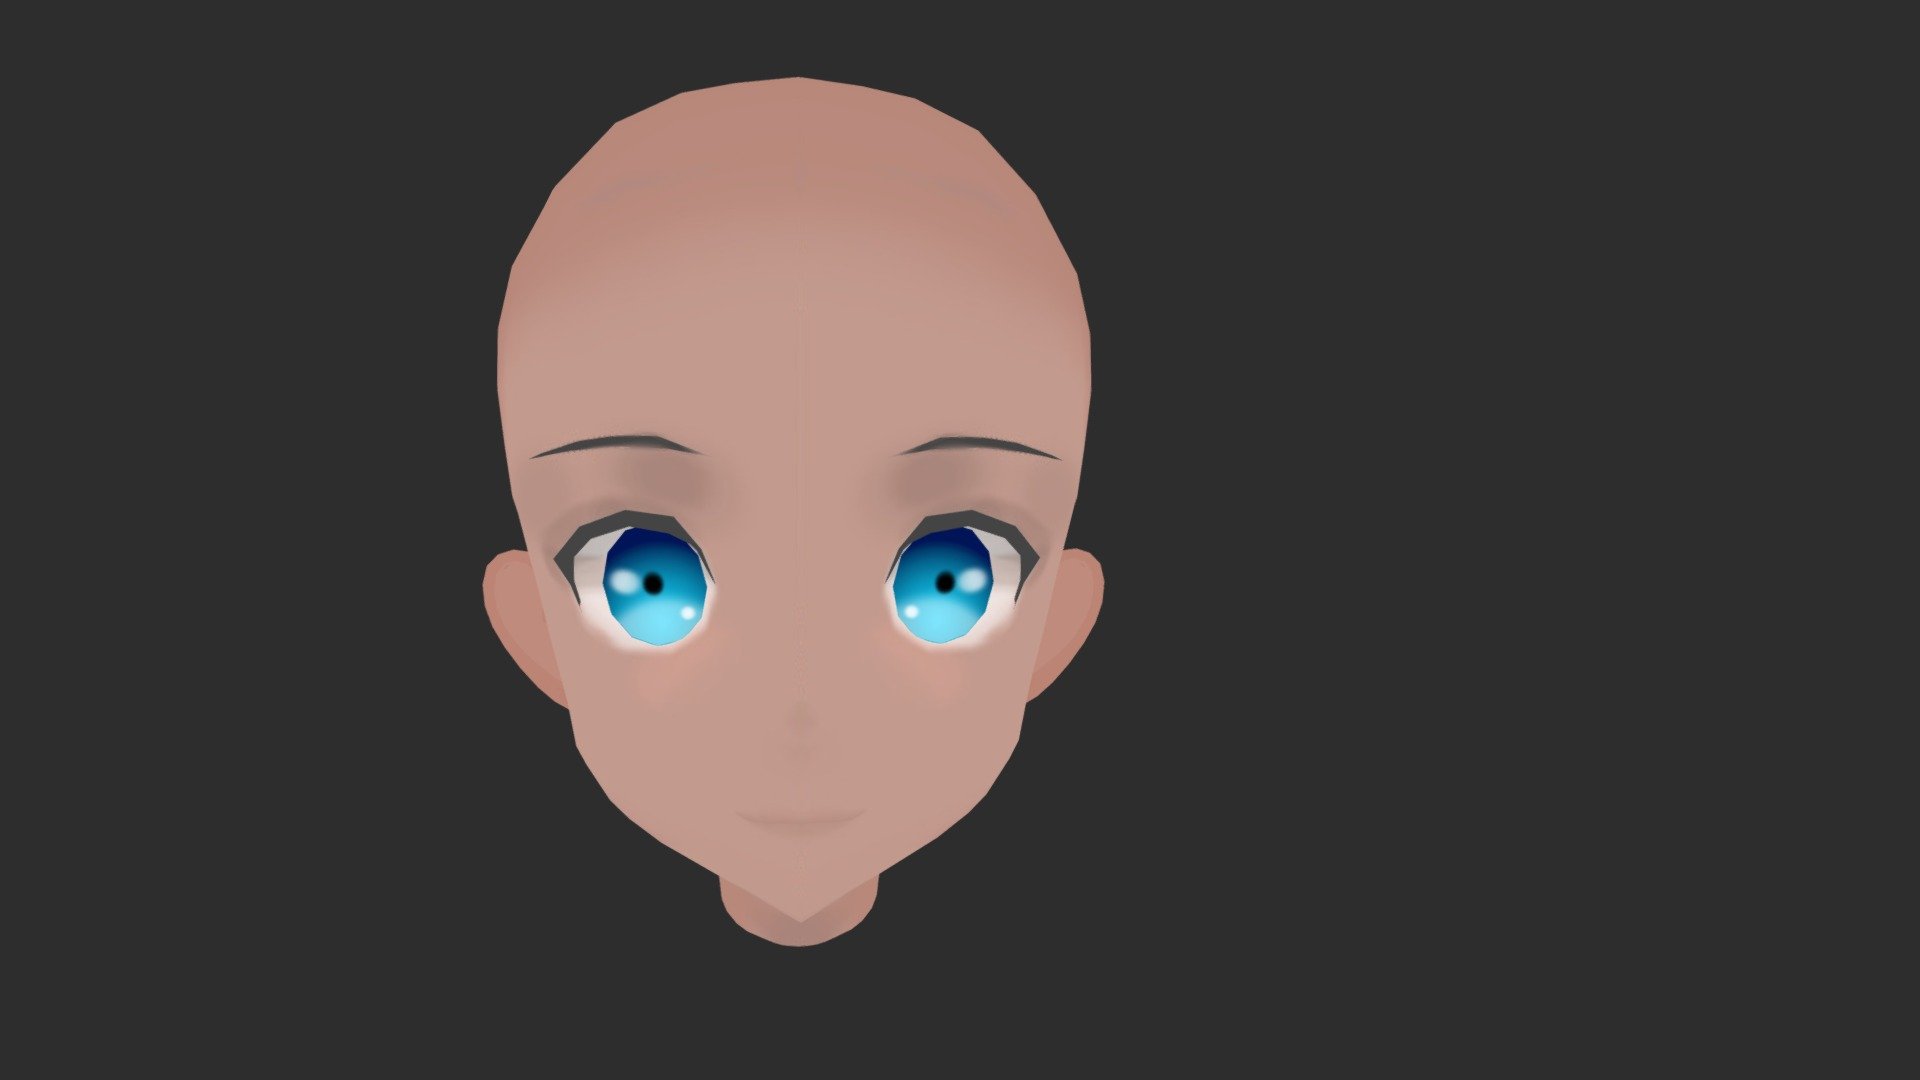 Anime head - Download Free 3D model by DaGreen (@DuskFallSalival) [fe08e8a]